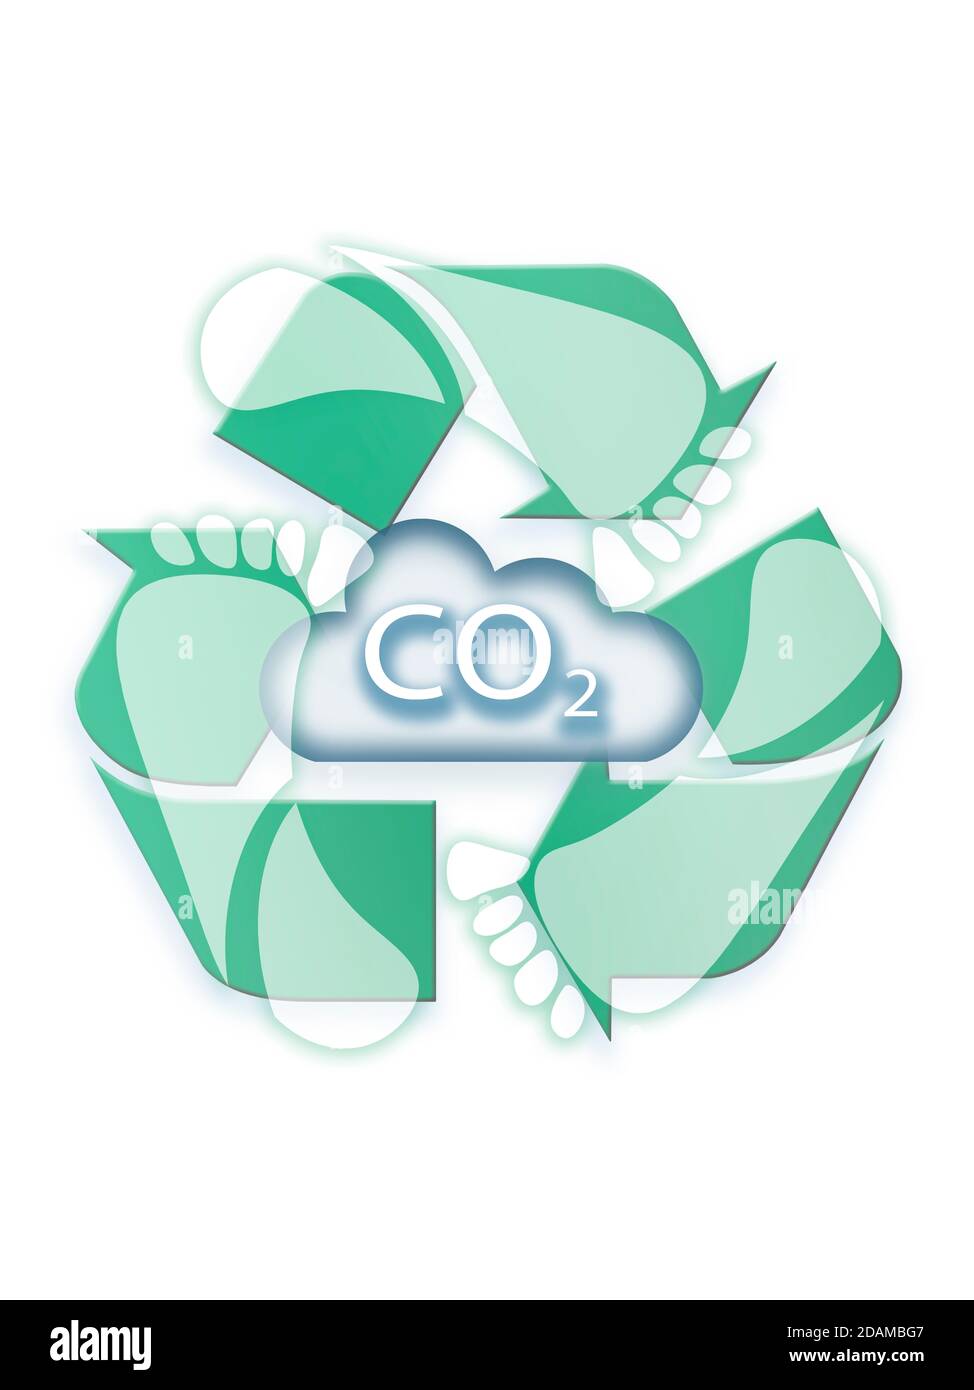 Kohlenstoffwolke mit Recycling-Symbol, Abbildung. Stockfoto